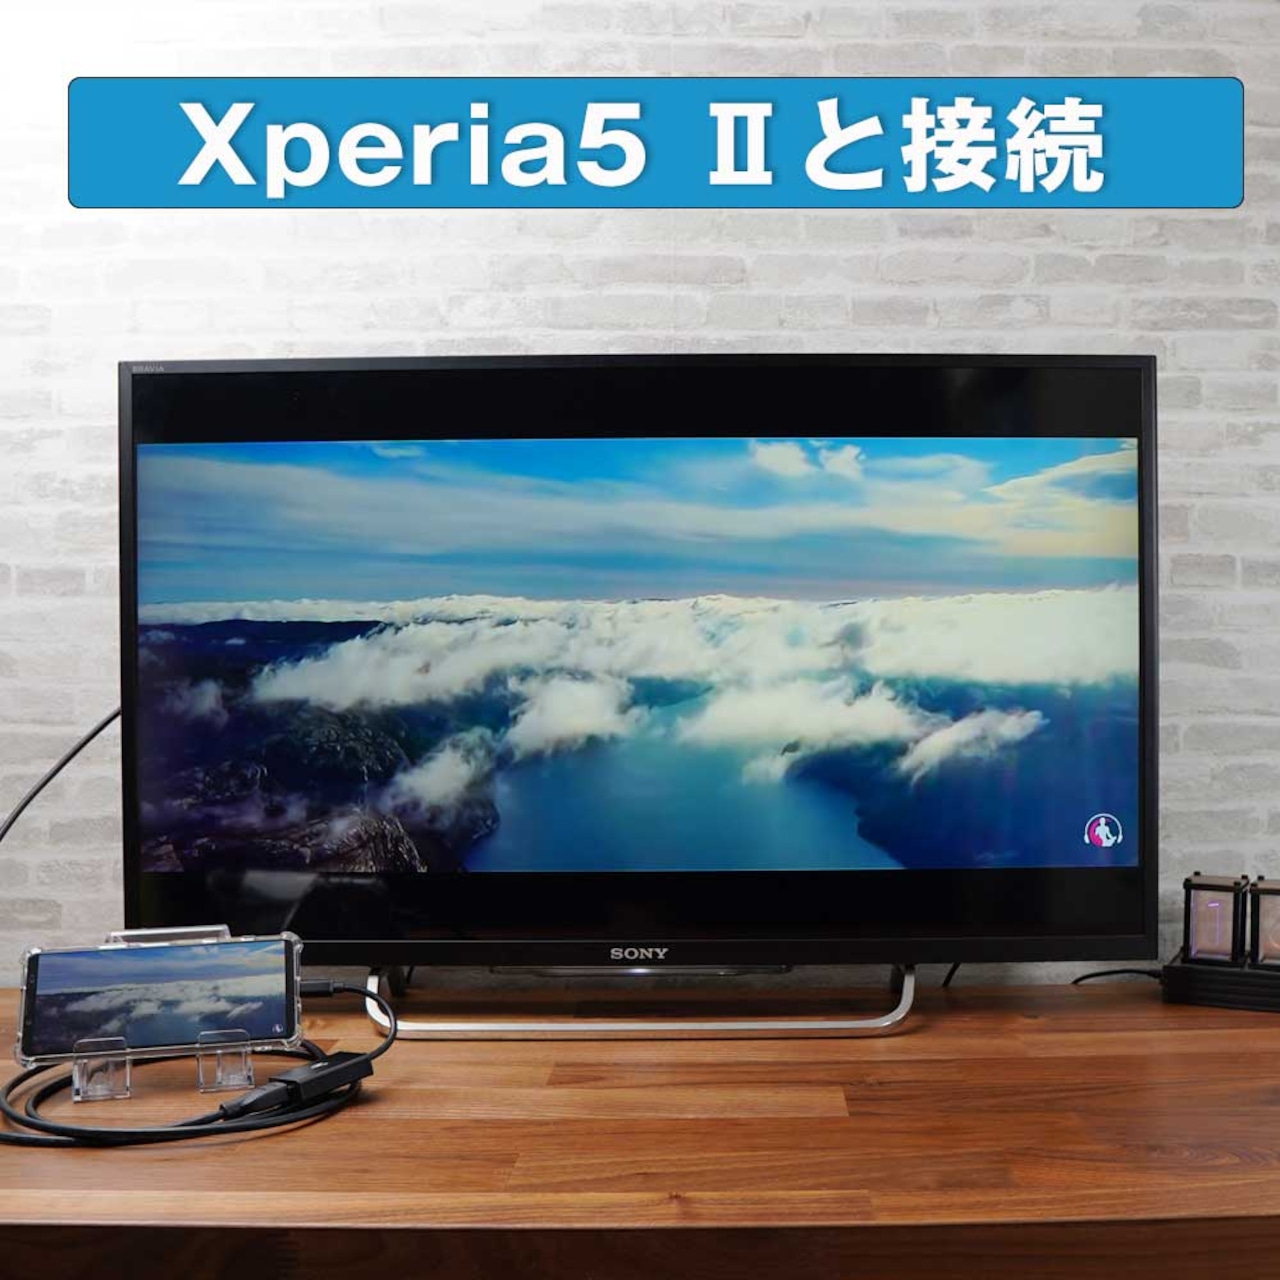 Hy+ Type-C to HDMI 変換アダプター HY-TCHD8 4K映像対応(Xperia5ii Xperia1ii AQUOS R5G arrows 5G Galaxy S20 5G/S20+/S10/S10+対応) ブラック